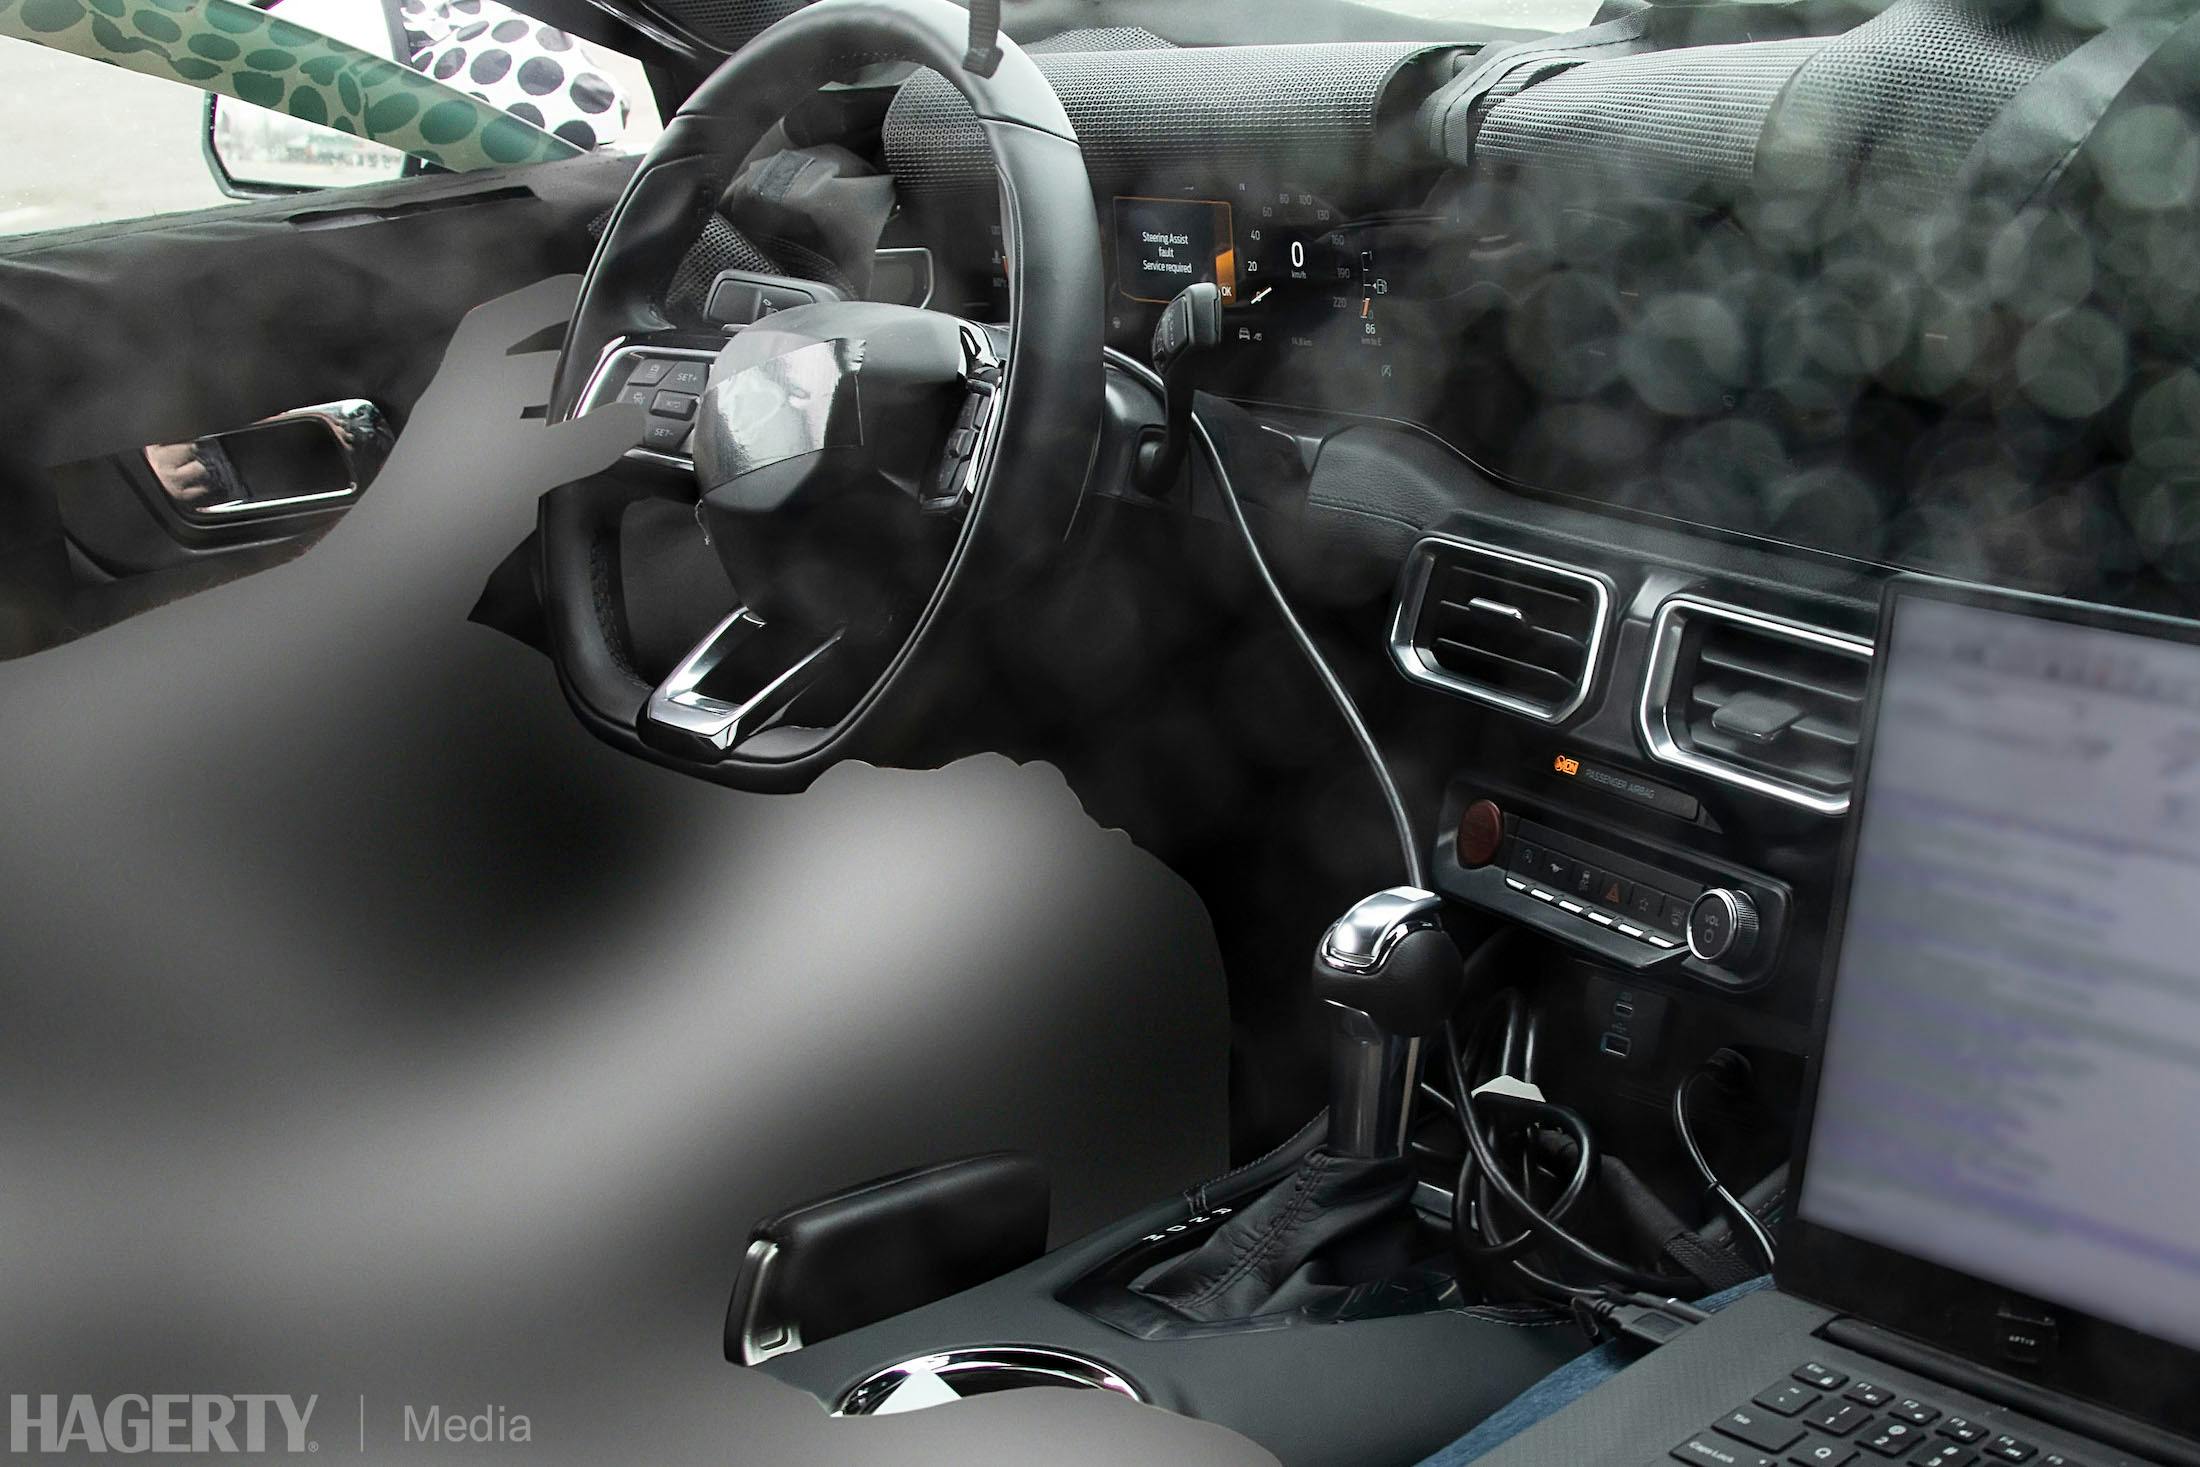 Mustang interior spy shot angle close